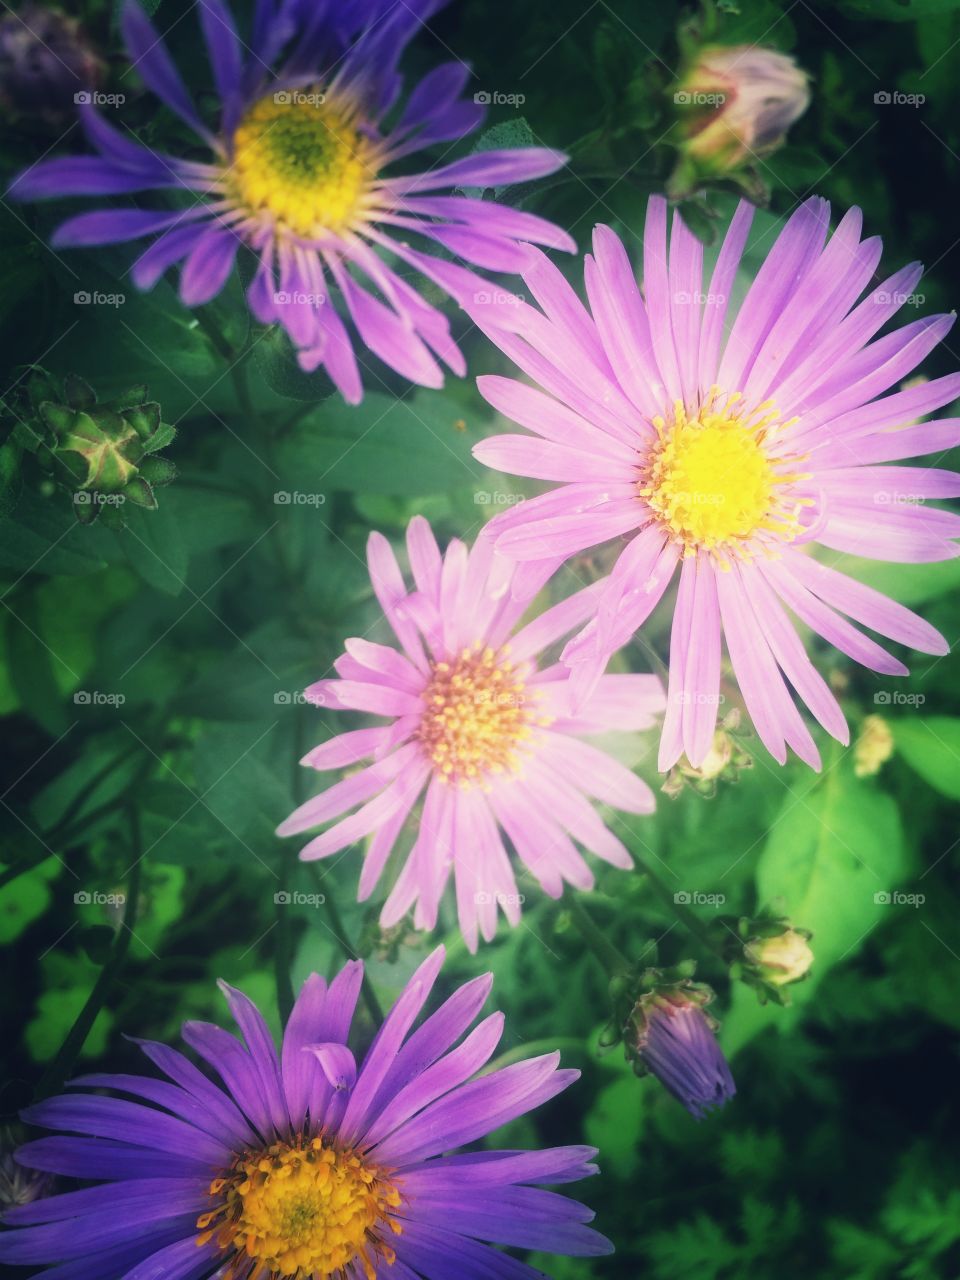 Violet aster flowers